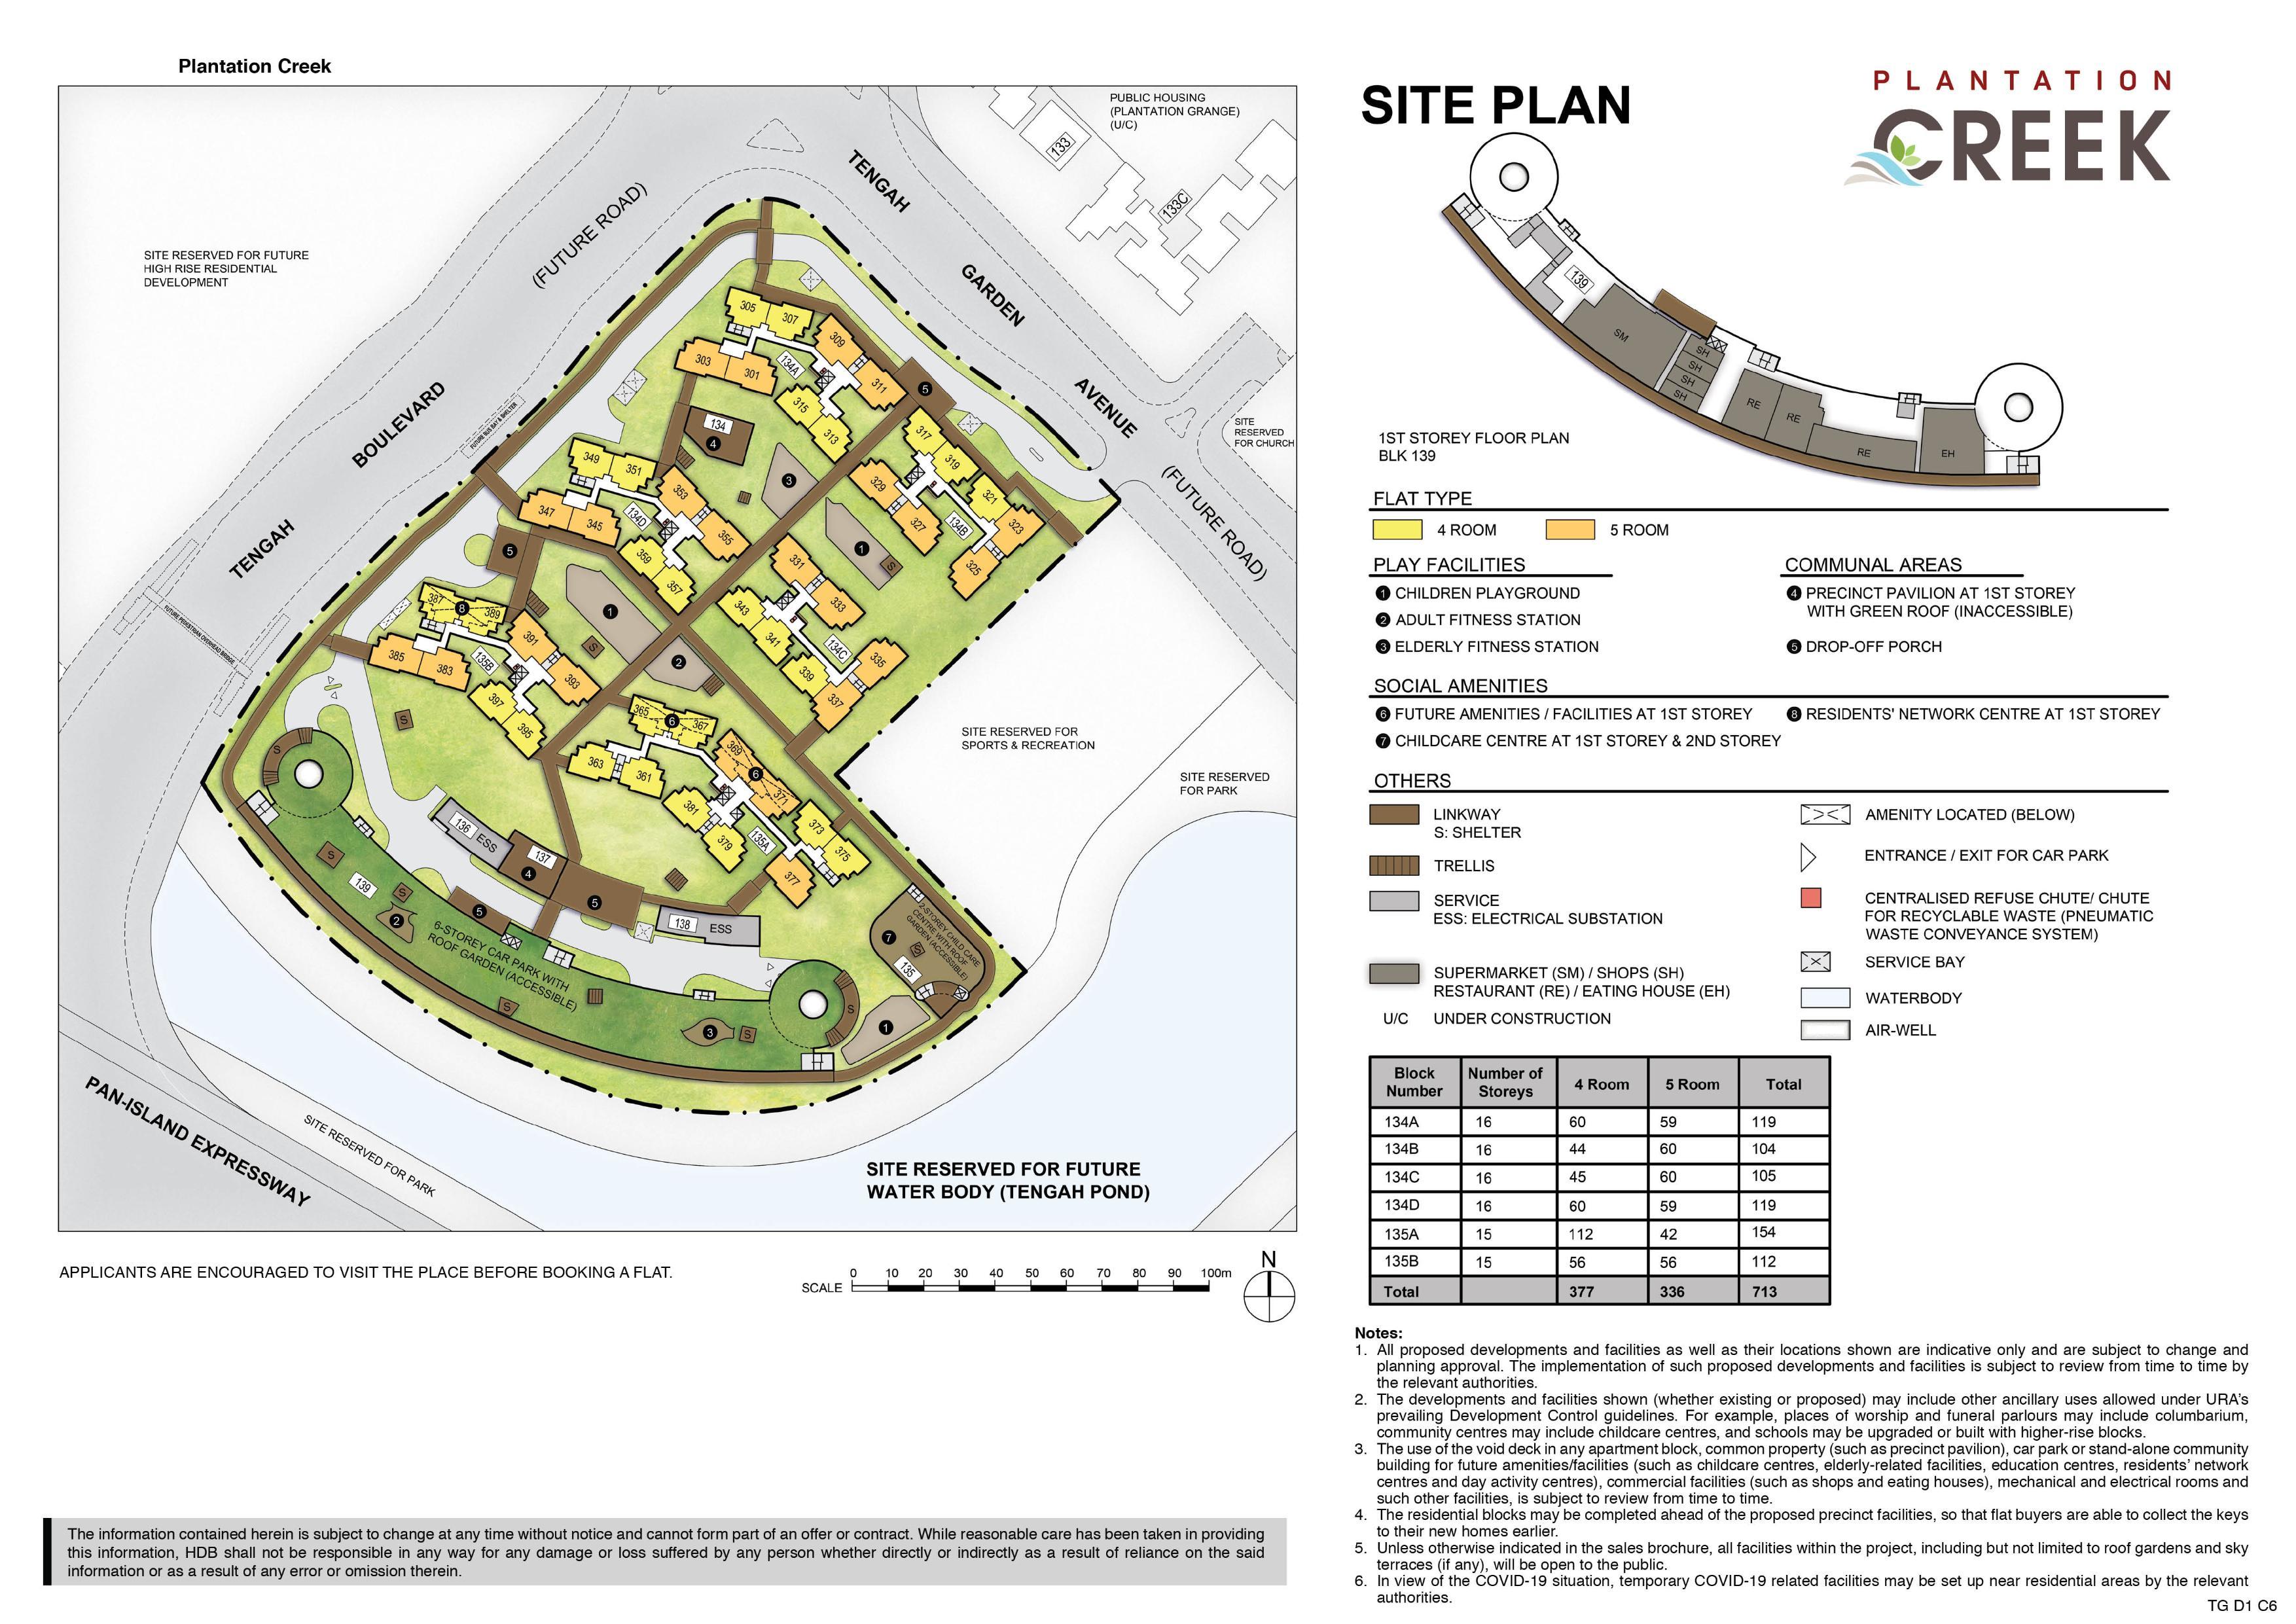 Plantation Creek Site Plan